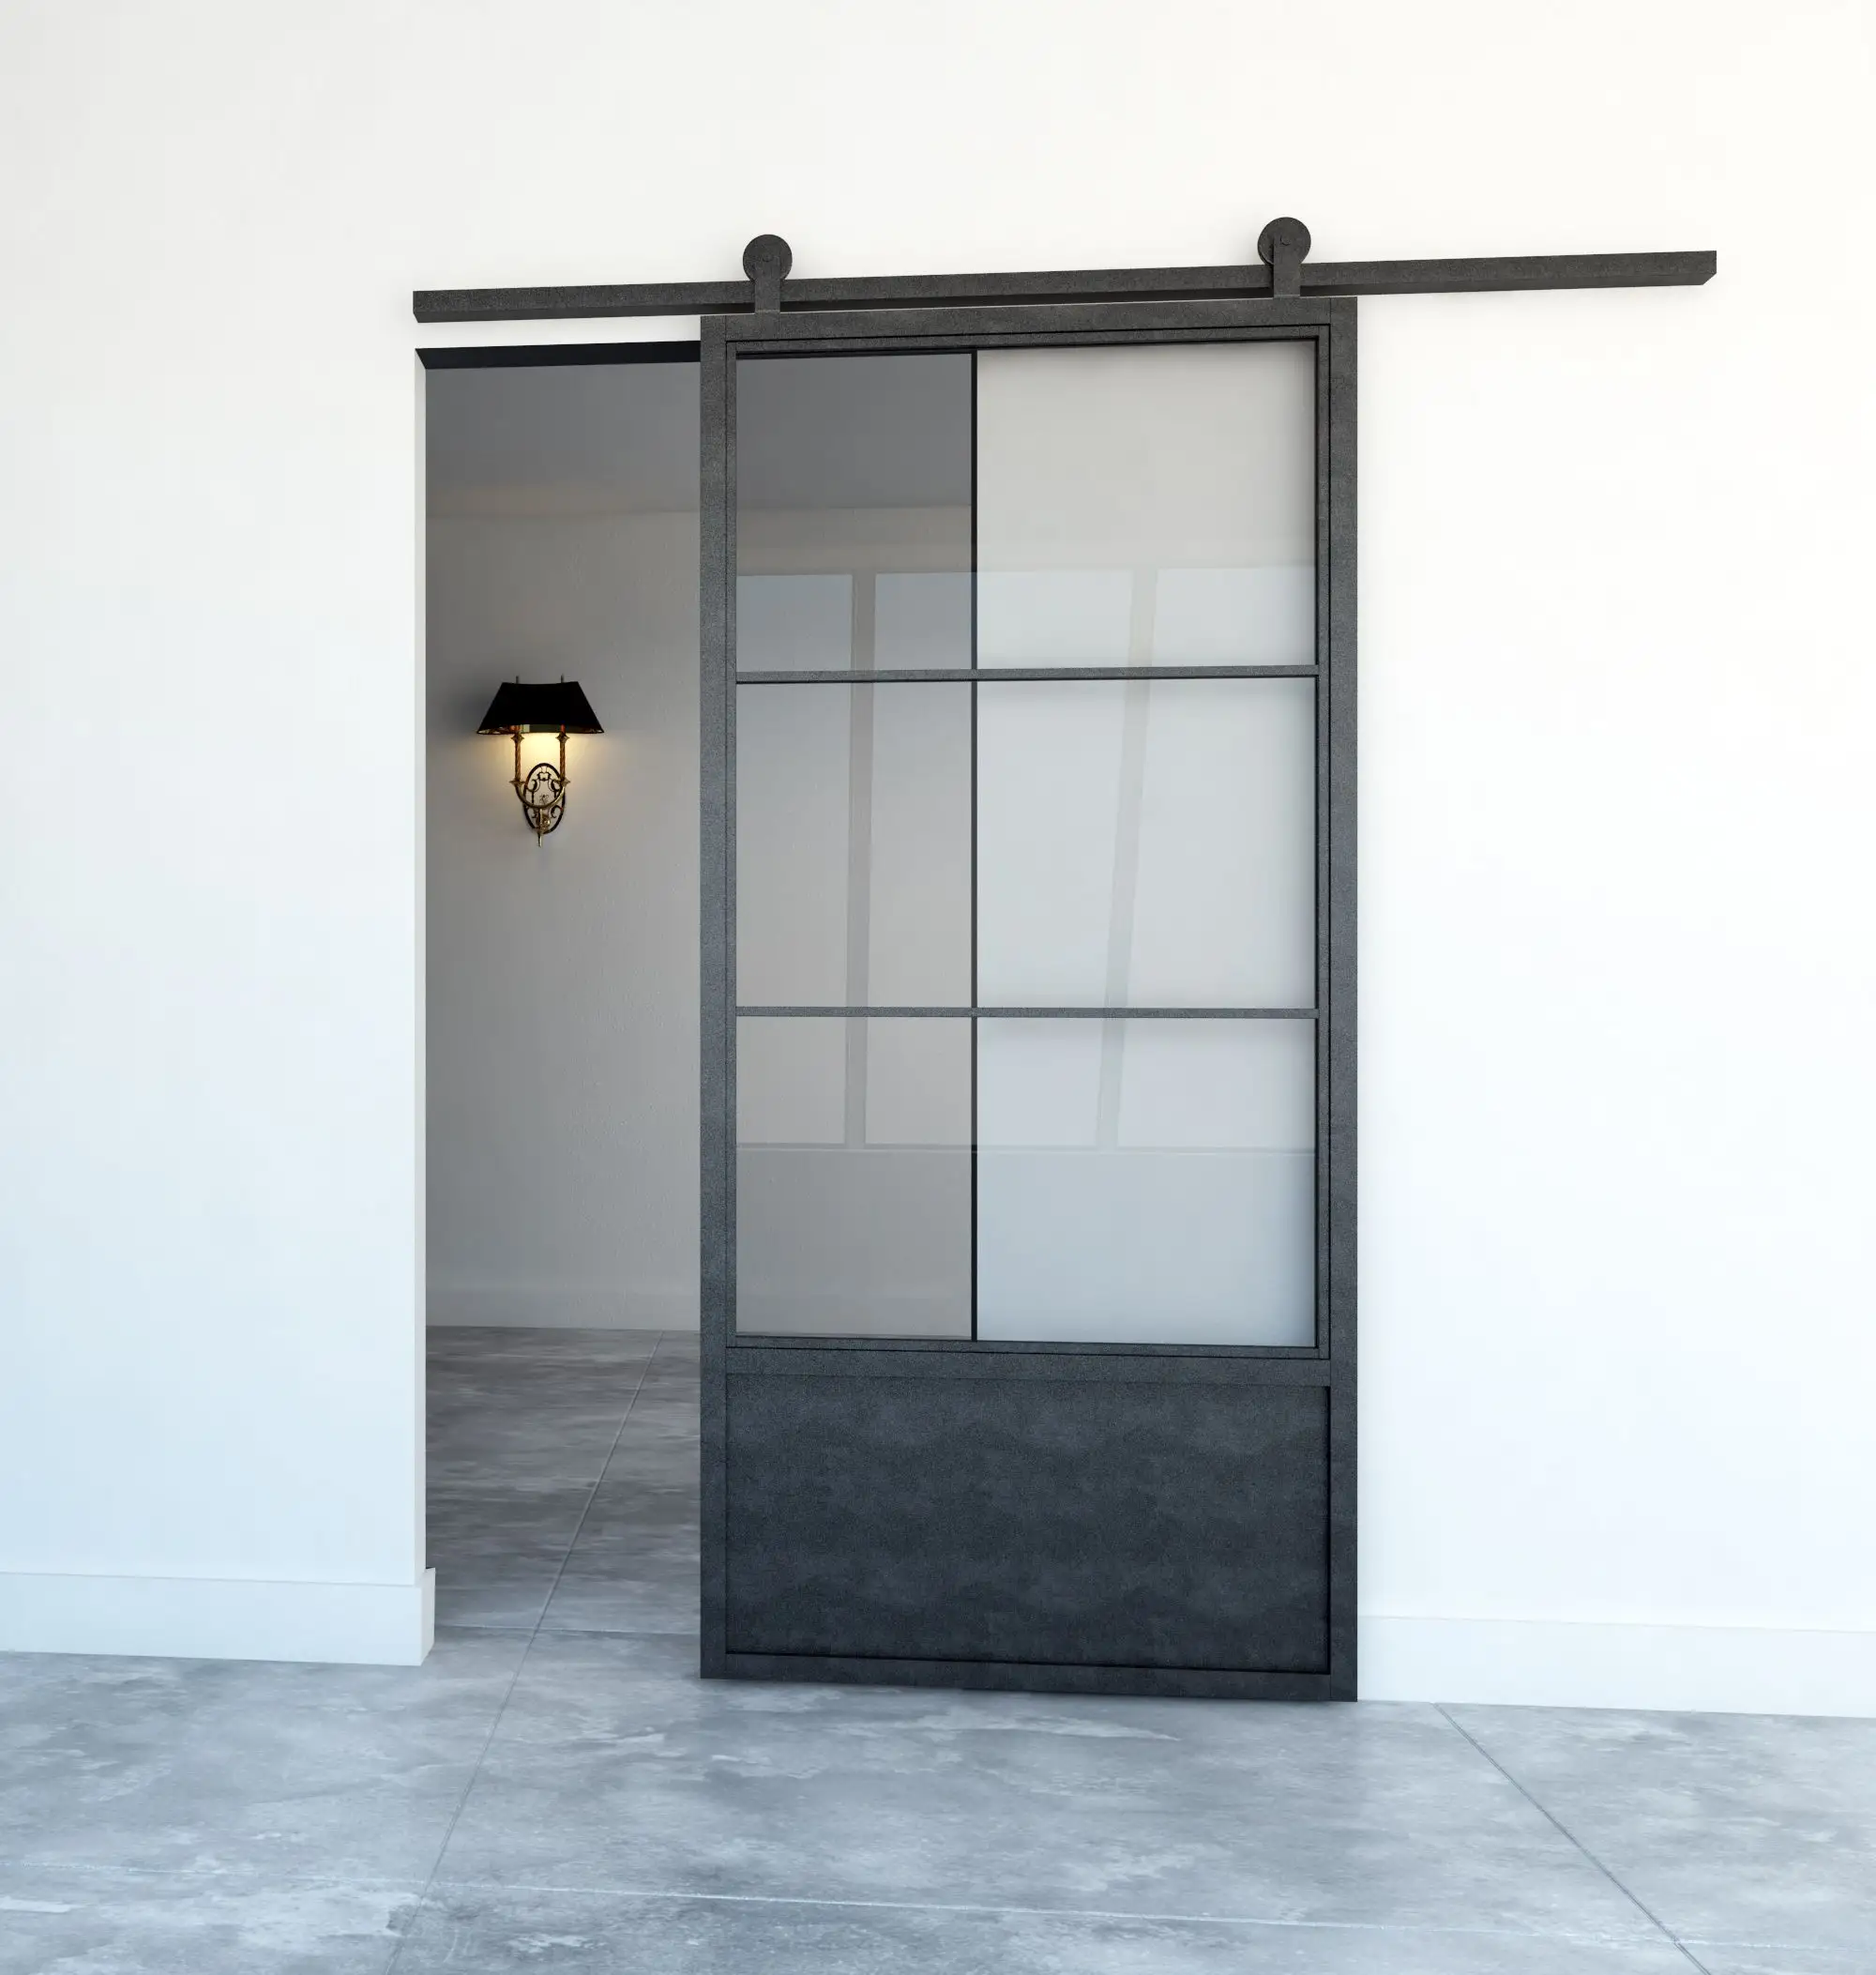 باب فولاذي زجاجي بتصميم حديث للمطبخ من الزجاج المقوى المزدوج الشفاف عازل للصوت